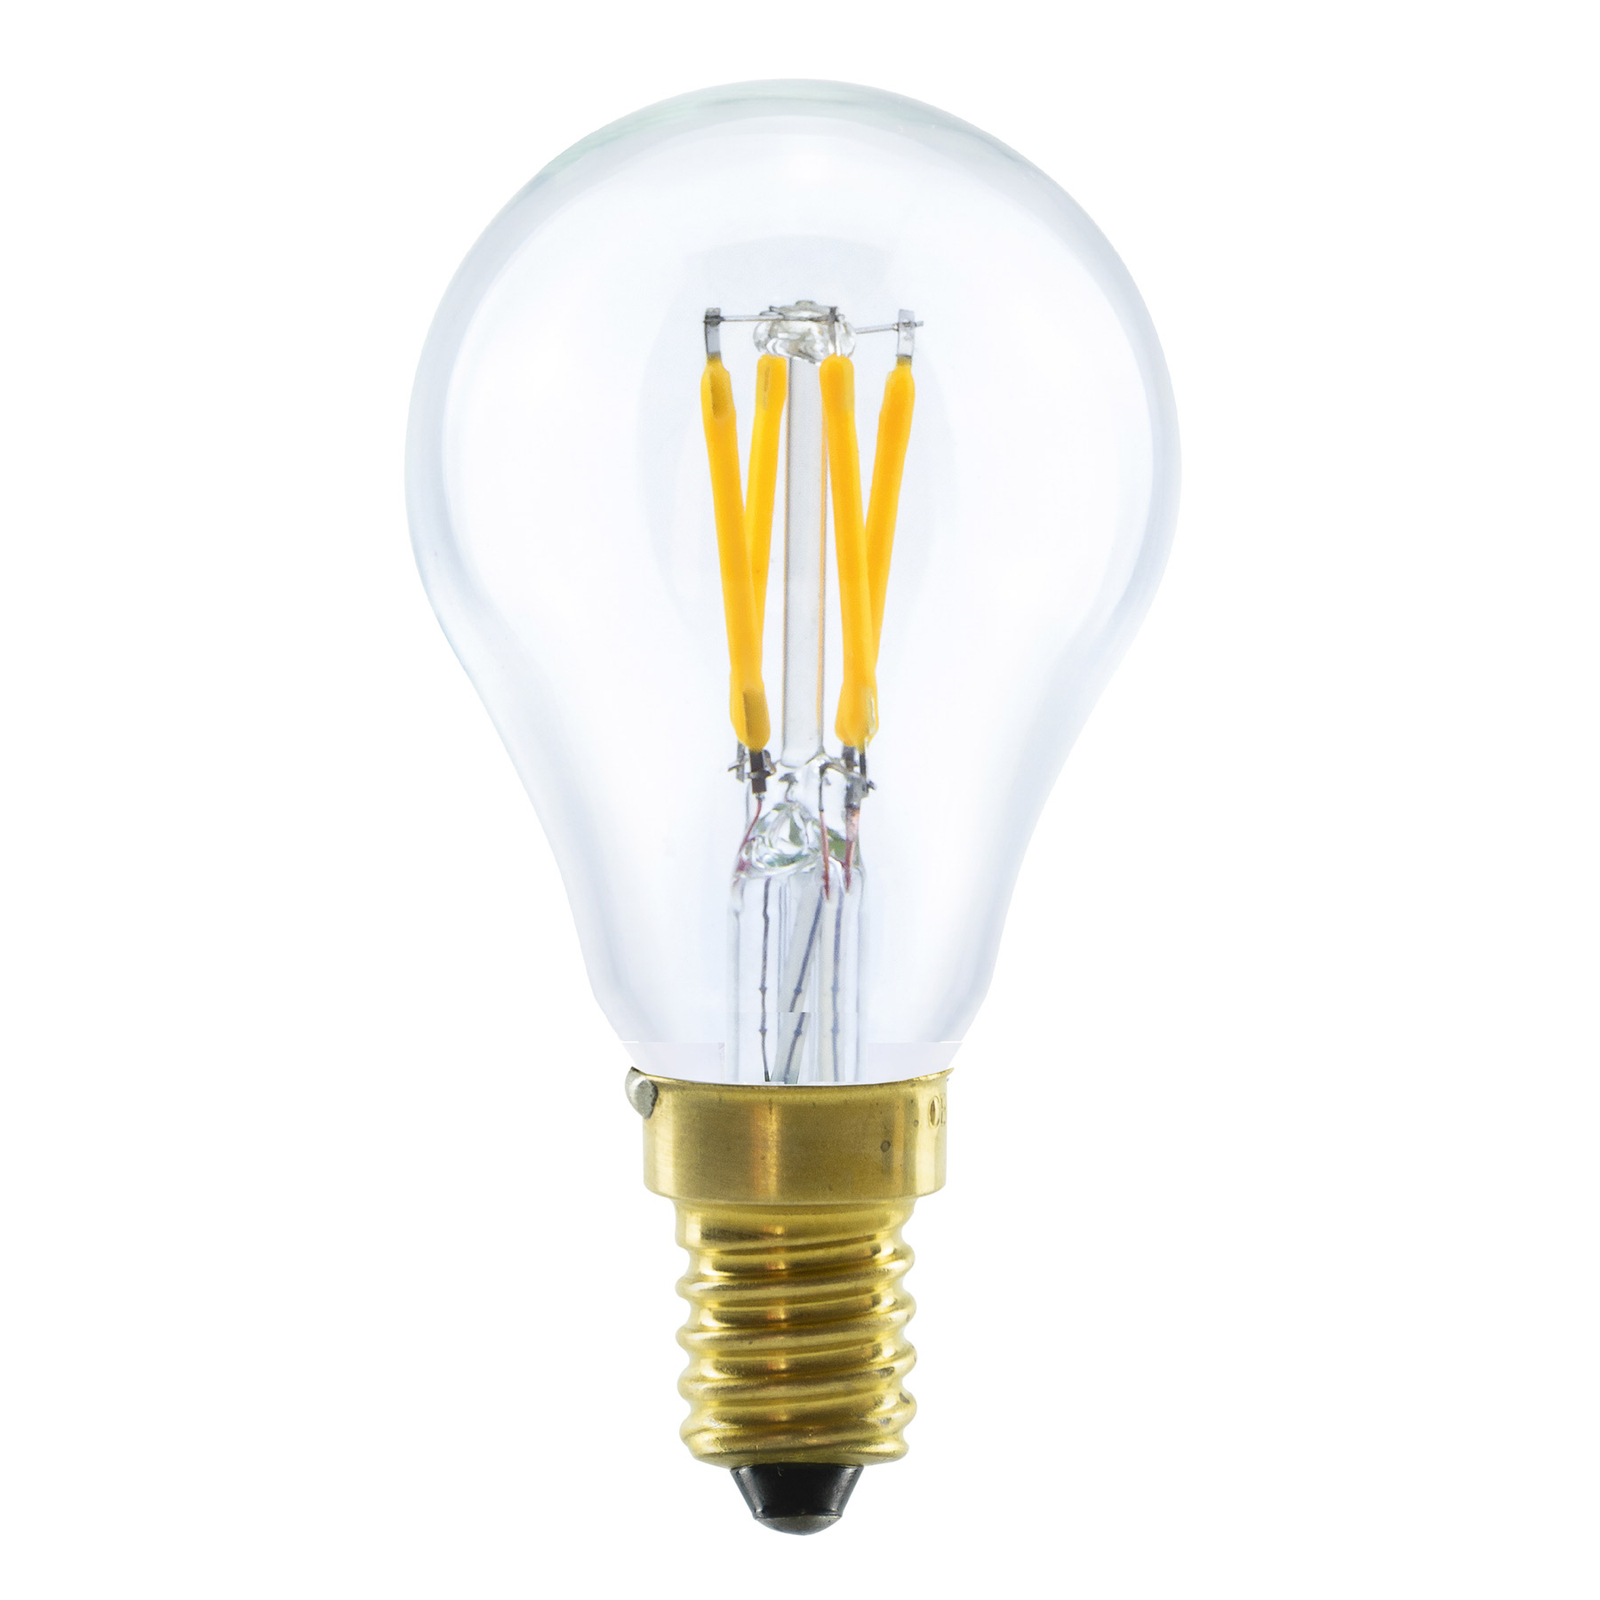 SEGULA LED-lámpa E14 3W 2,200K fényerősségű, sötétíthető, világos